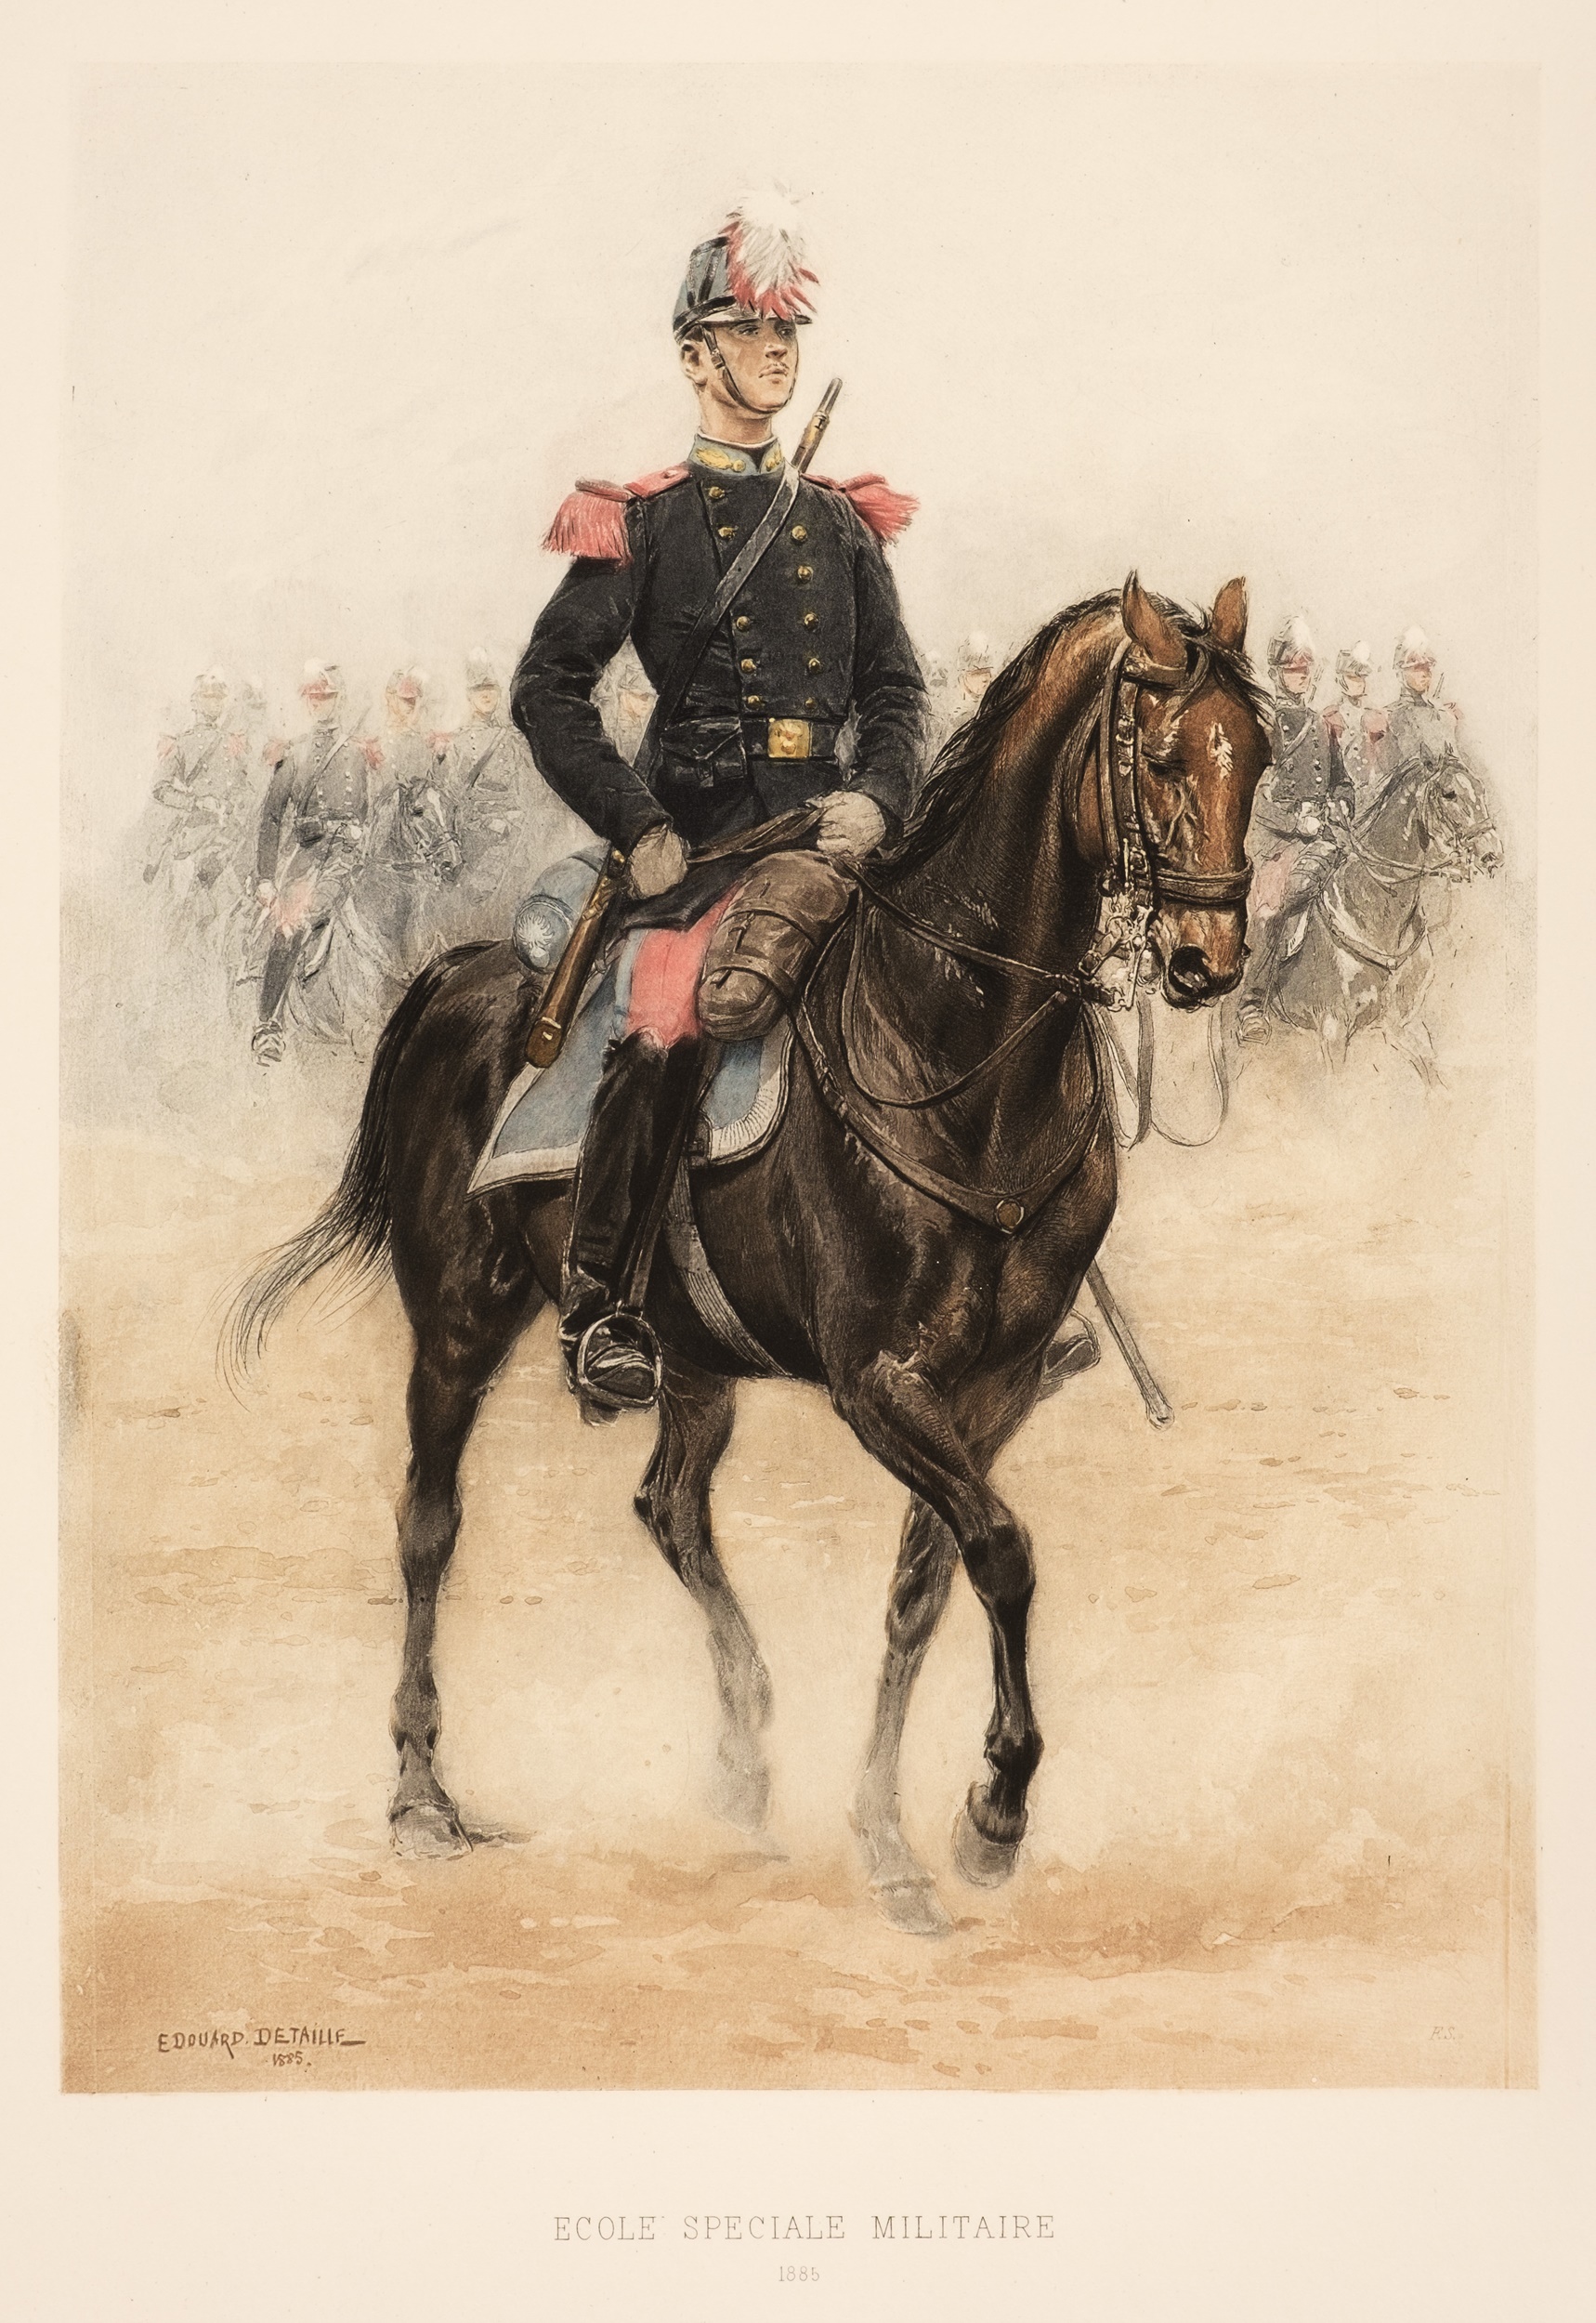 Detaille (Edouard). Types et Uniformes l'Armee Francaise, 2 volumes, 1885-89